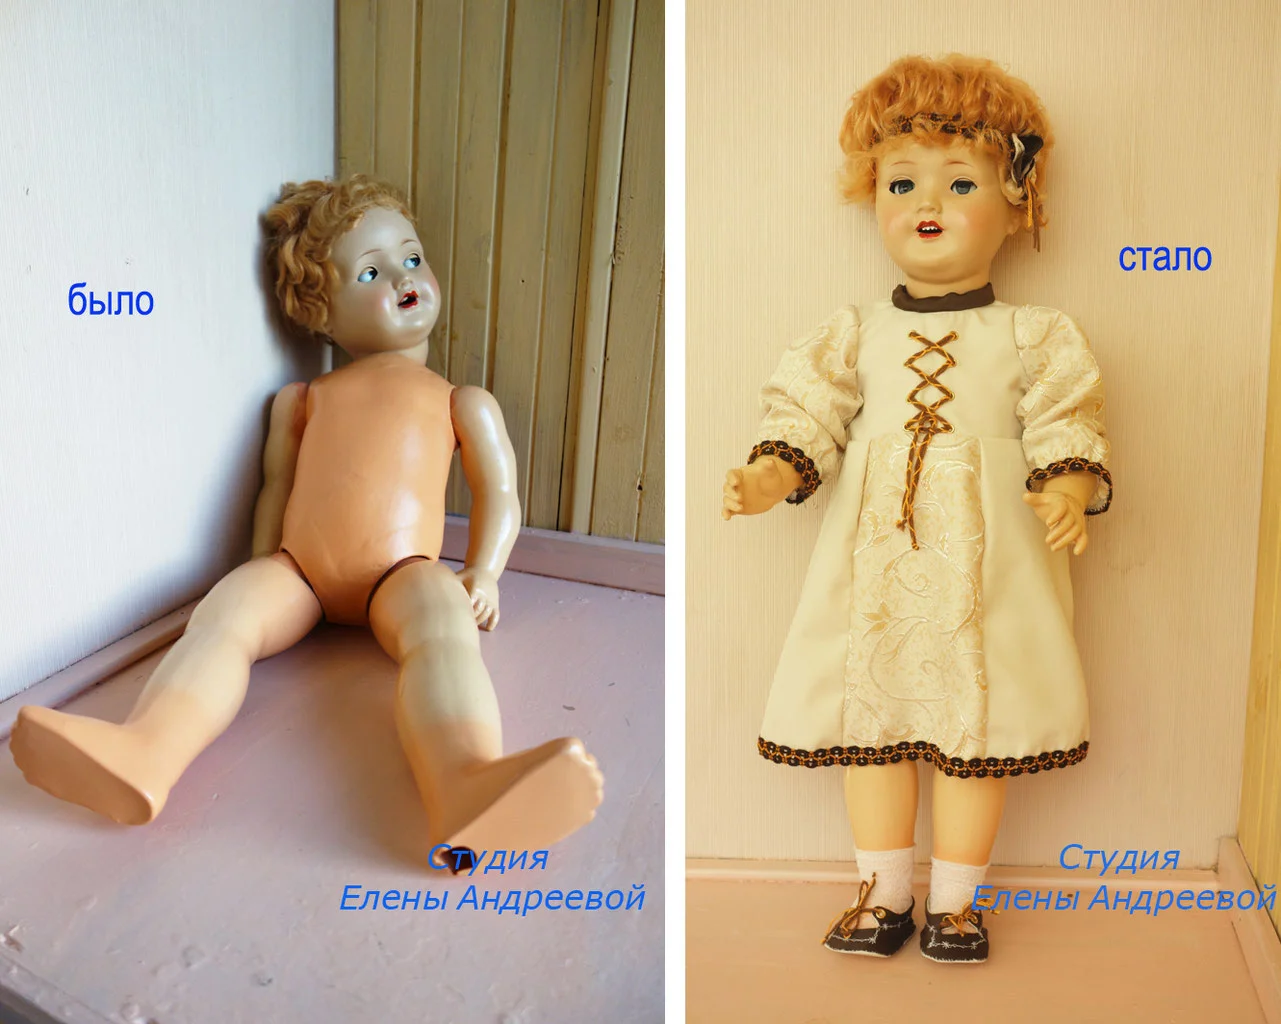 Проблемы советских кукол, советы по реставрации - Страница 9 - Форум о куклах DP